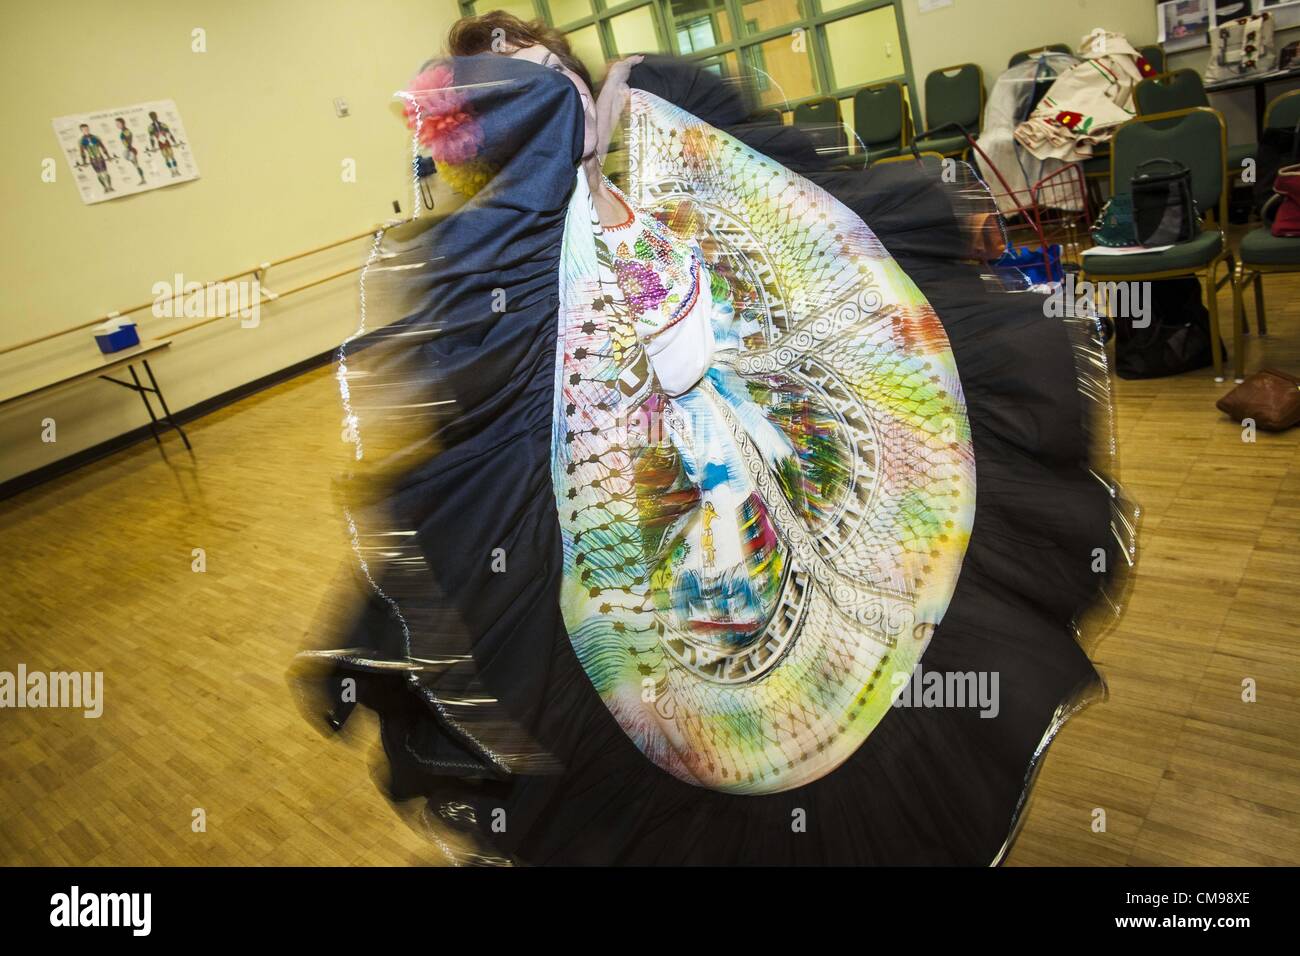 27. Juni 2012 - Glendale, Arizona, USA - SHENY RUIZ MILLIGAN, 67 Jahre alt, während der Proben für die Senior-Fiesta-Tänzer Mittelpunkt Erwachsenen Glendale in Arizona, einem Vorort von Phoenix Tänze. Tanzen wie ein Teil des Trainingsprogramm nicht ungewöhnlich ist, aber die Senior Fiesta Tänzer mexikanischen Stil Folklorico Tänze für ihr Workout verwenden. Die Senior-Fiesta-Tänzer haben zusammen seit 15 Jahren durchgeführt. Sie erhalten jede Woche für Proben zusammen und führen in Pflegeheimen und Ruhestand Zentren in der Gegend von Phoenix, einmal im Monat oder so. Ihre energetische mexikanischen Folklorico Tänze halten sie limbe Stockfoto